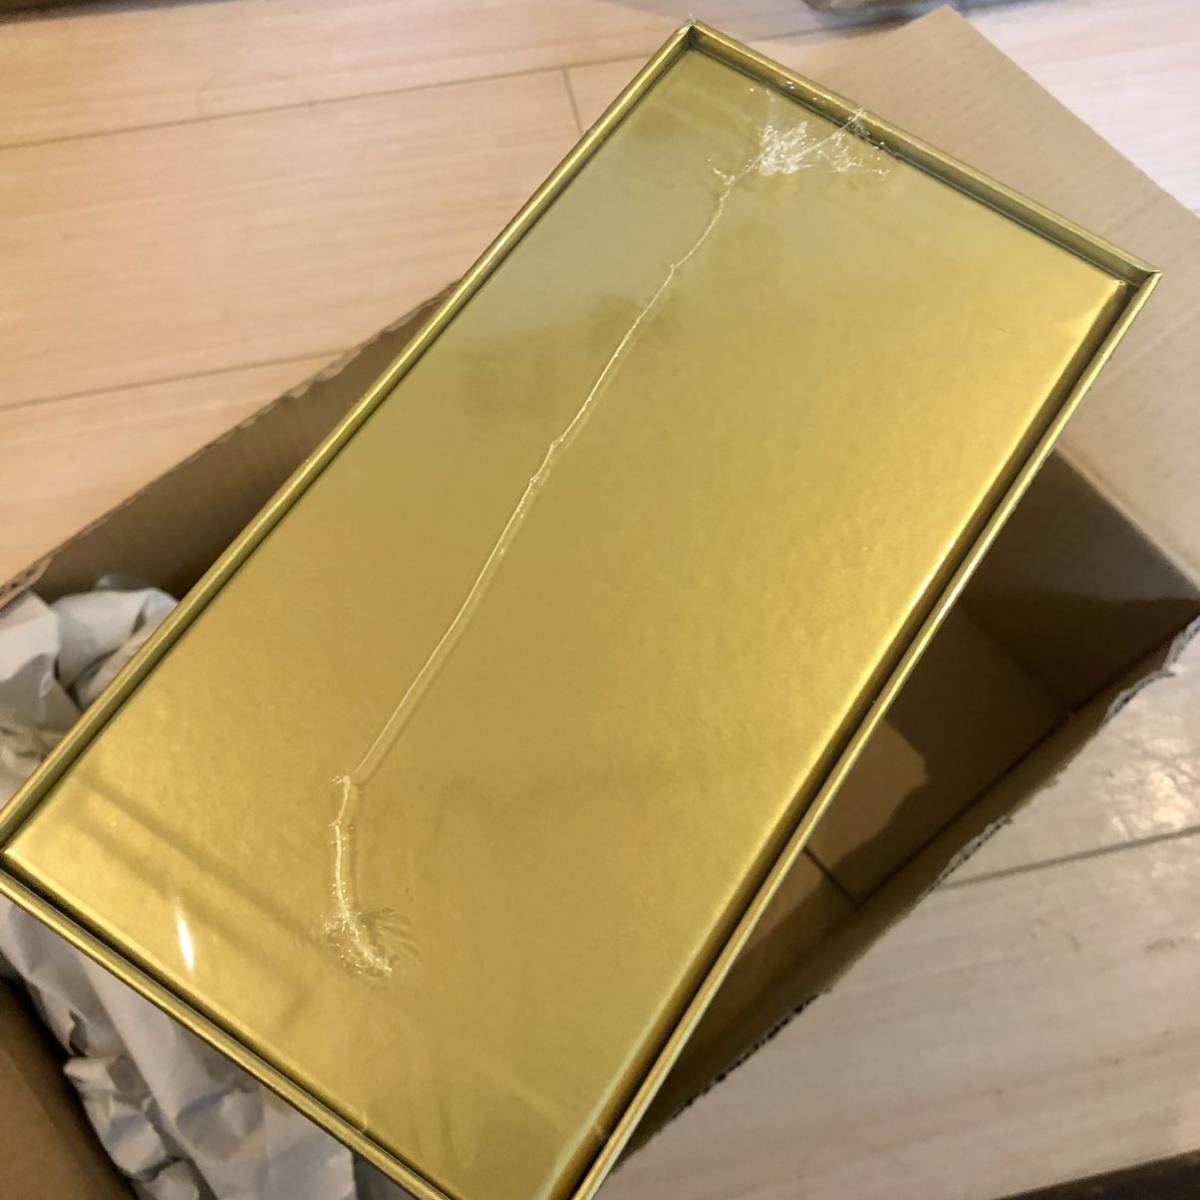 の正規取扱店 25thANNIVERSARY Amazon受注生産版 BOX GOLDEN ポケモンカードゲーム